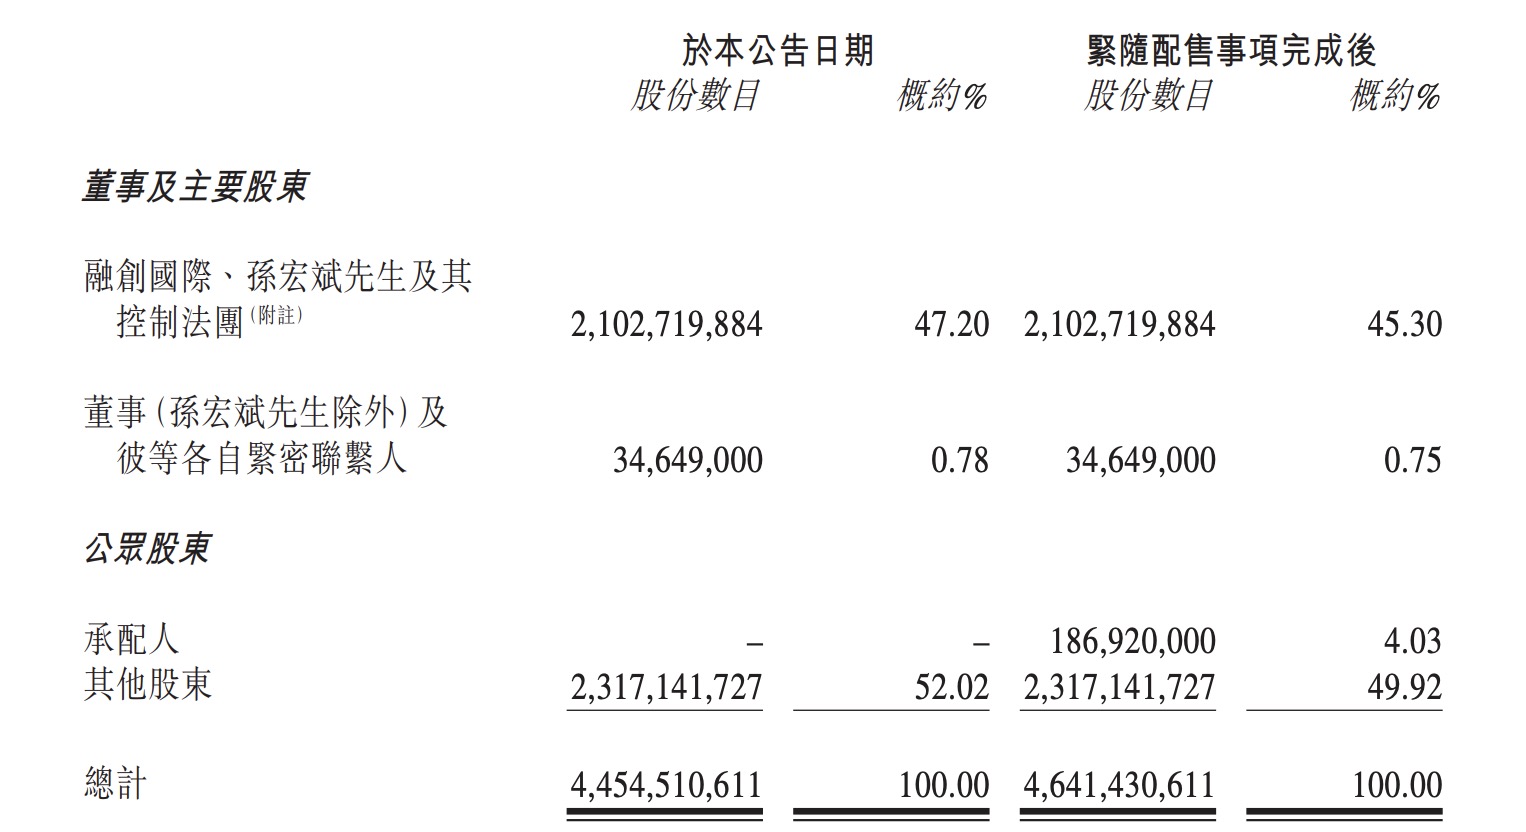 融创中国:拟配售新股 募集资金80亿港元